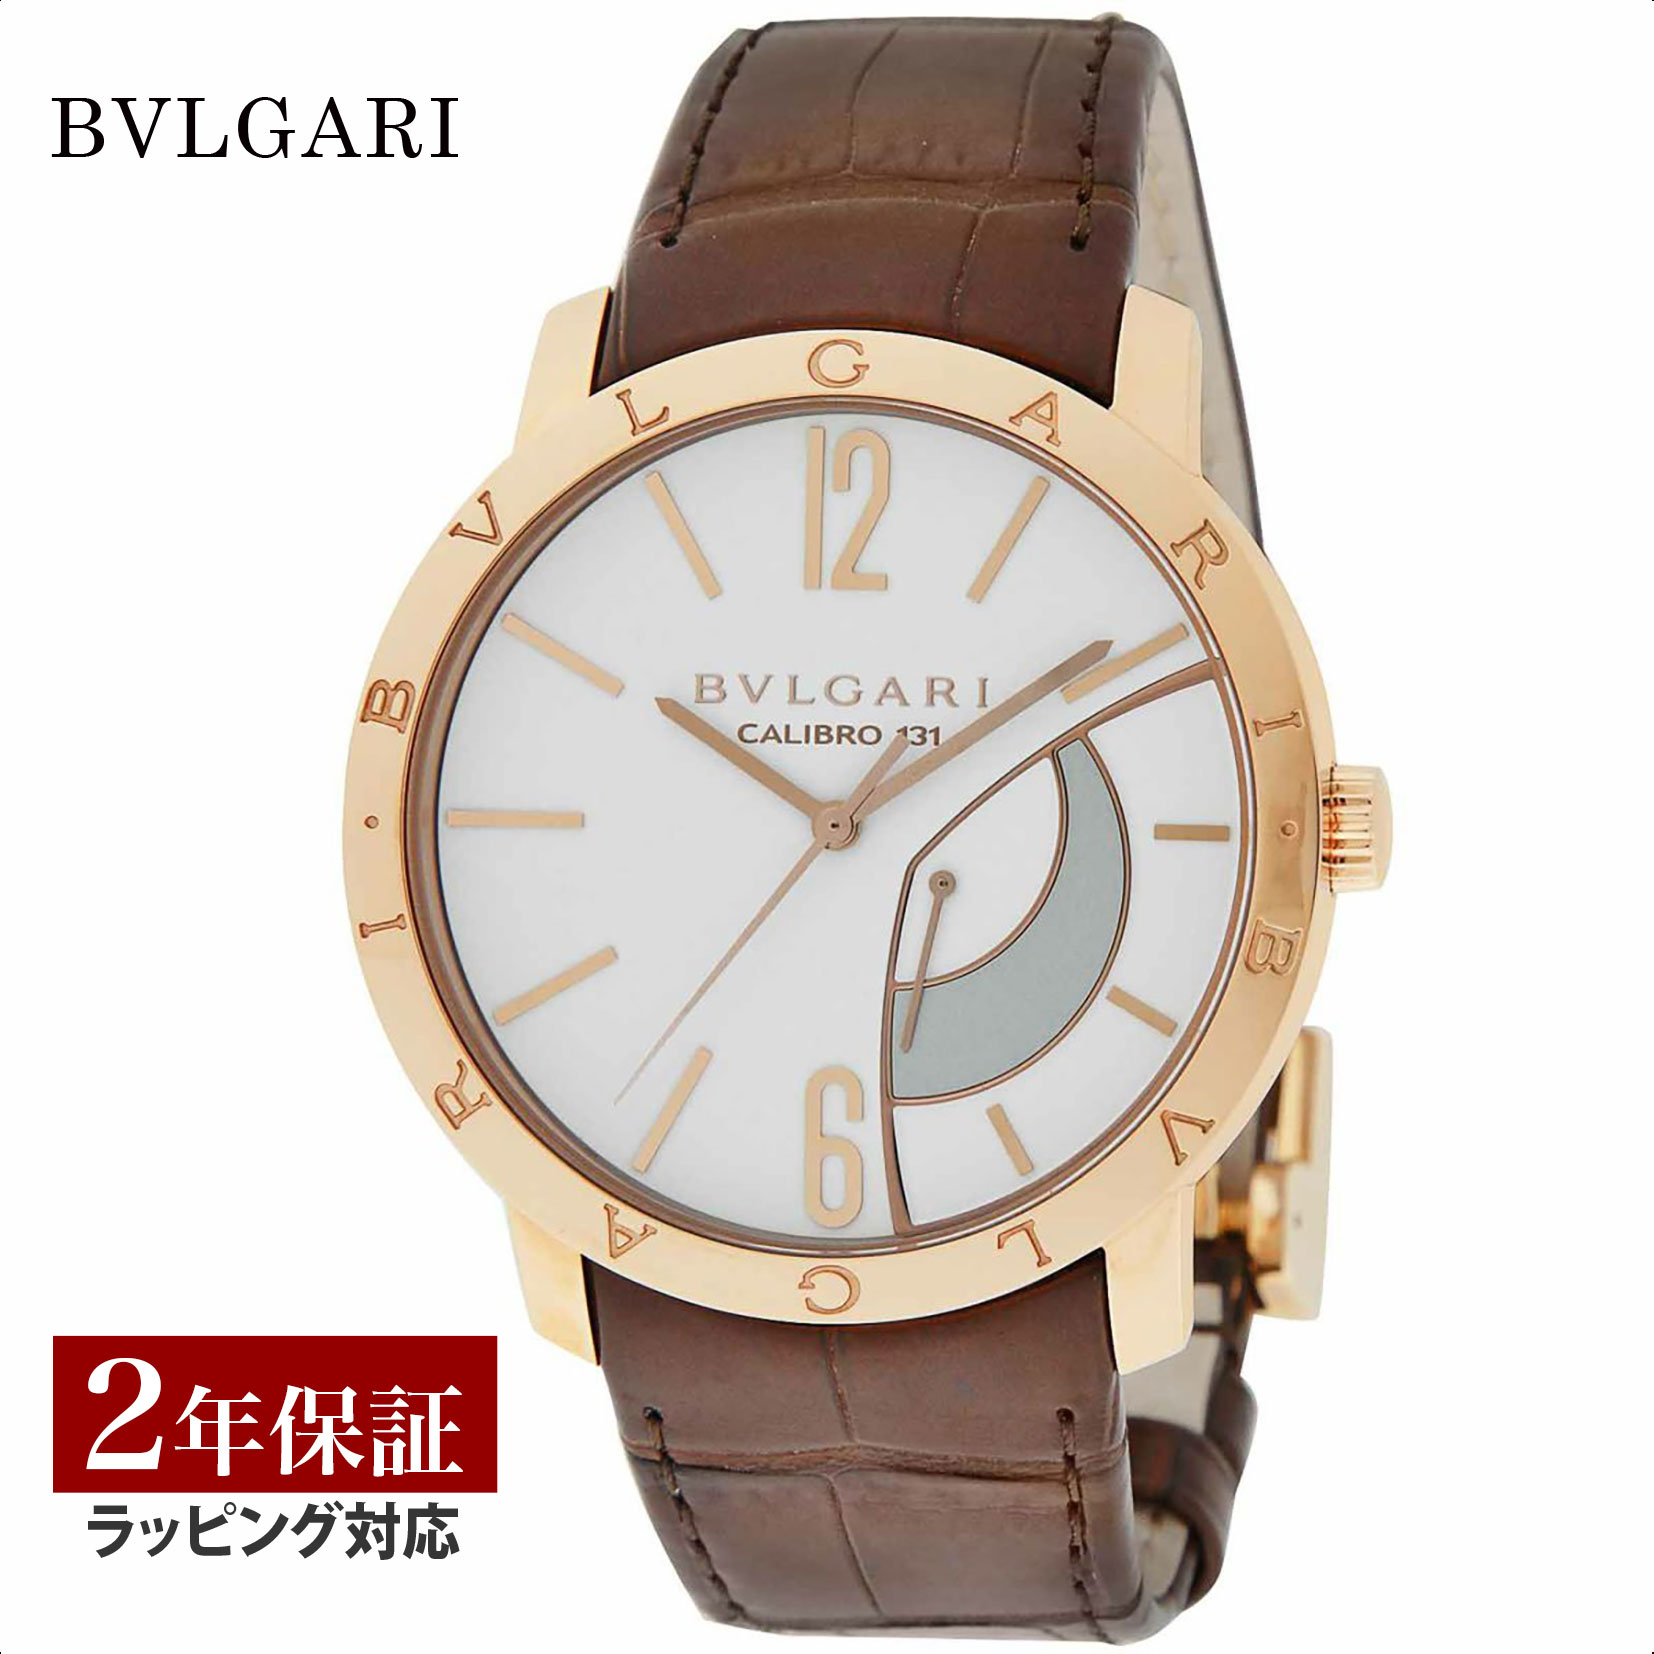 ブルガリブルガリ 腕時計（メンズ） ブルガリ BVLGARI メンズ 時計 Bvlgari Bvlgari ブルガリブルガリ 手巻 ホワイト BBP43WGL 時計 腕時計 高級腕時計 ブランド 【ローン金利無料】